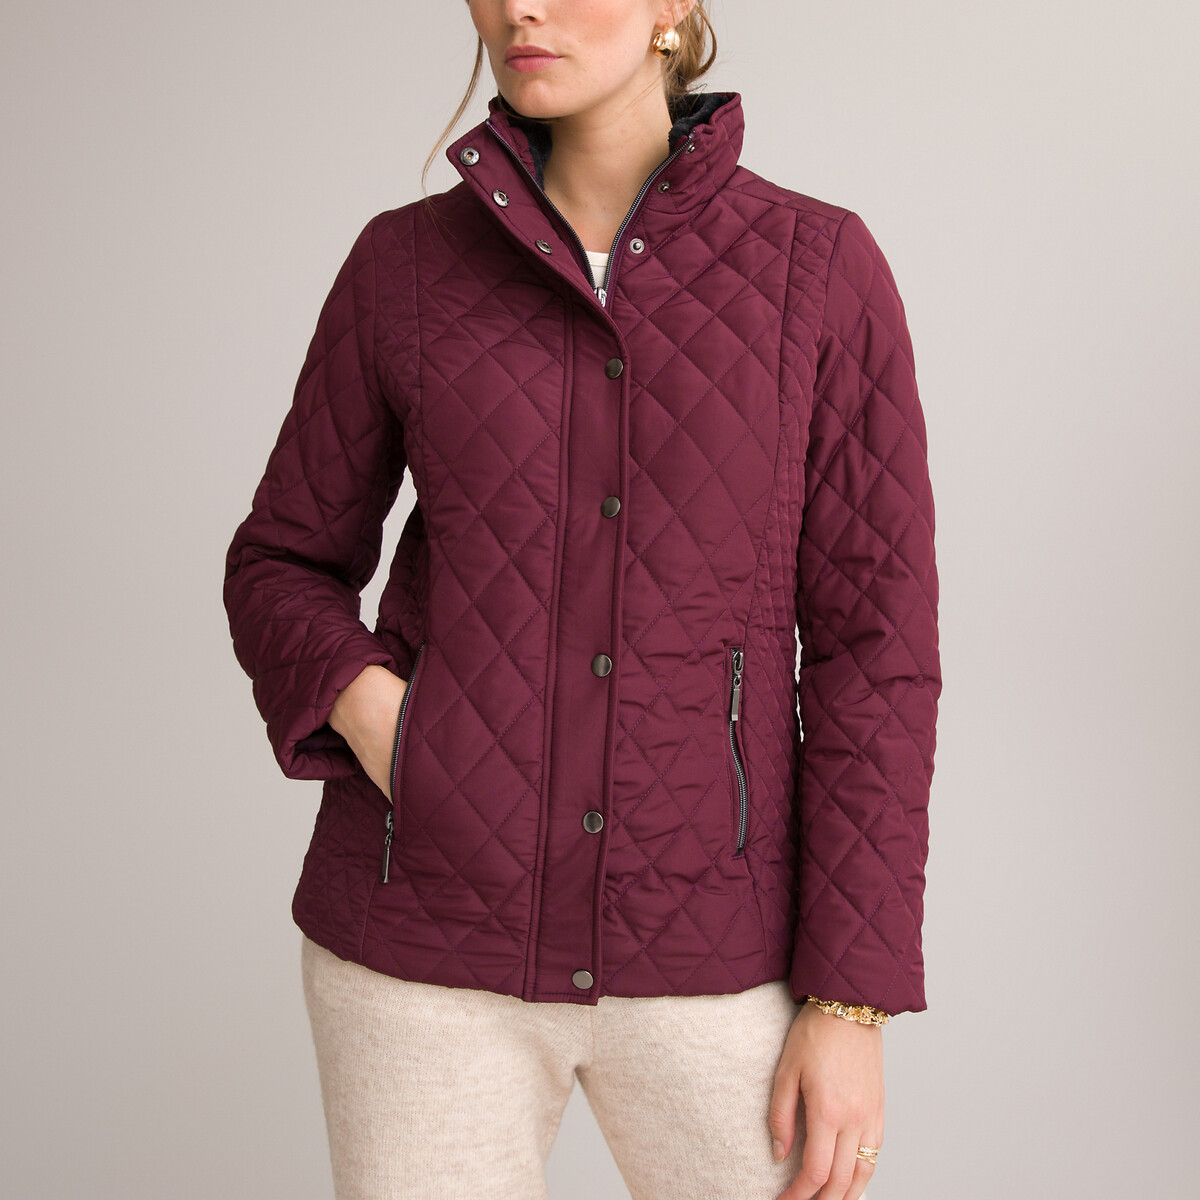 Куртка Стеганая короткая застежка на молнию для зимы 48 (FR) - 54 (RUS) розовый